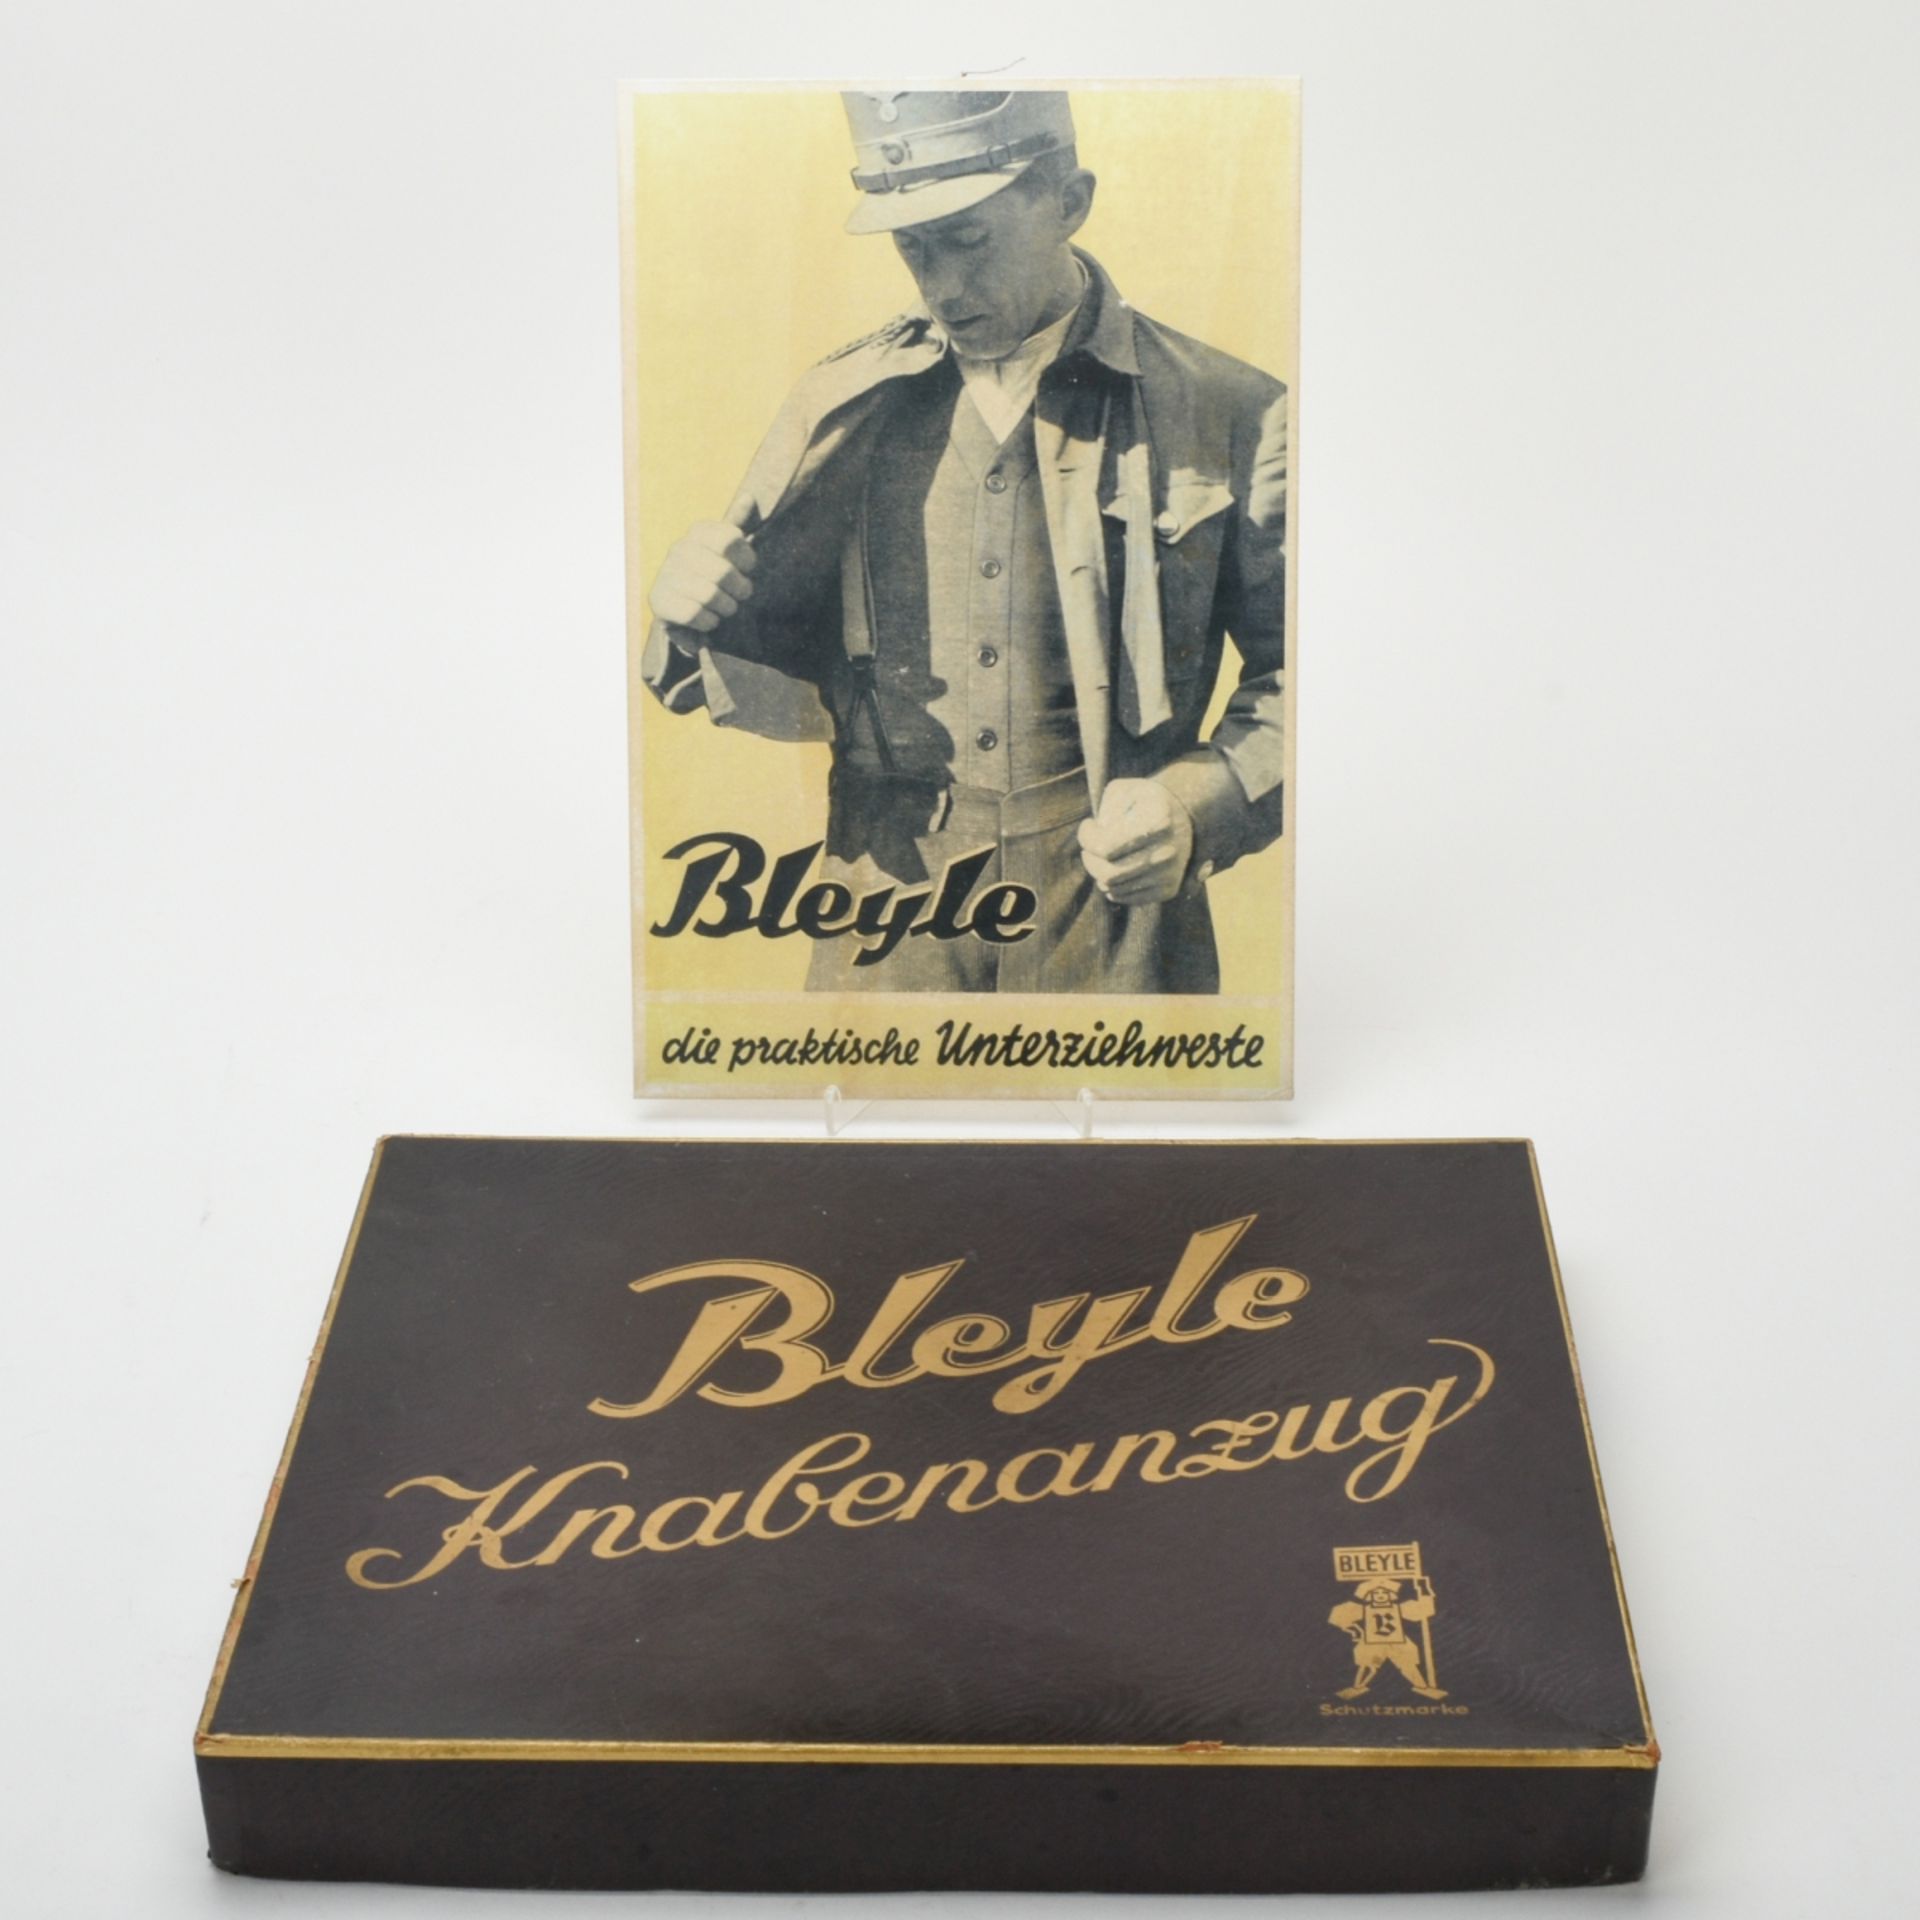 Bleyle-Werbeplakat und -Originalschachtel - Image 3 of 3